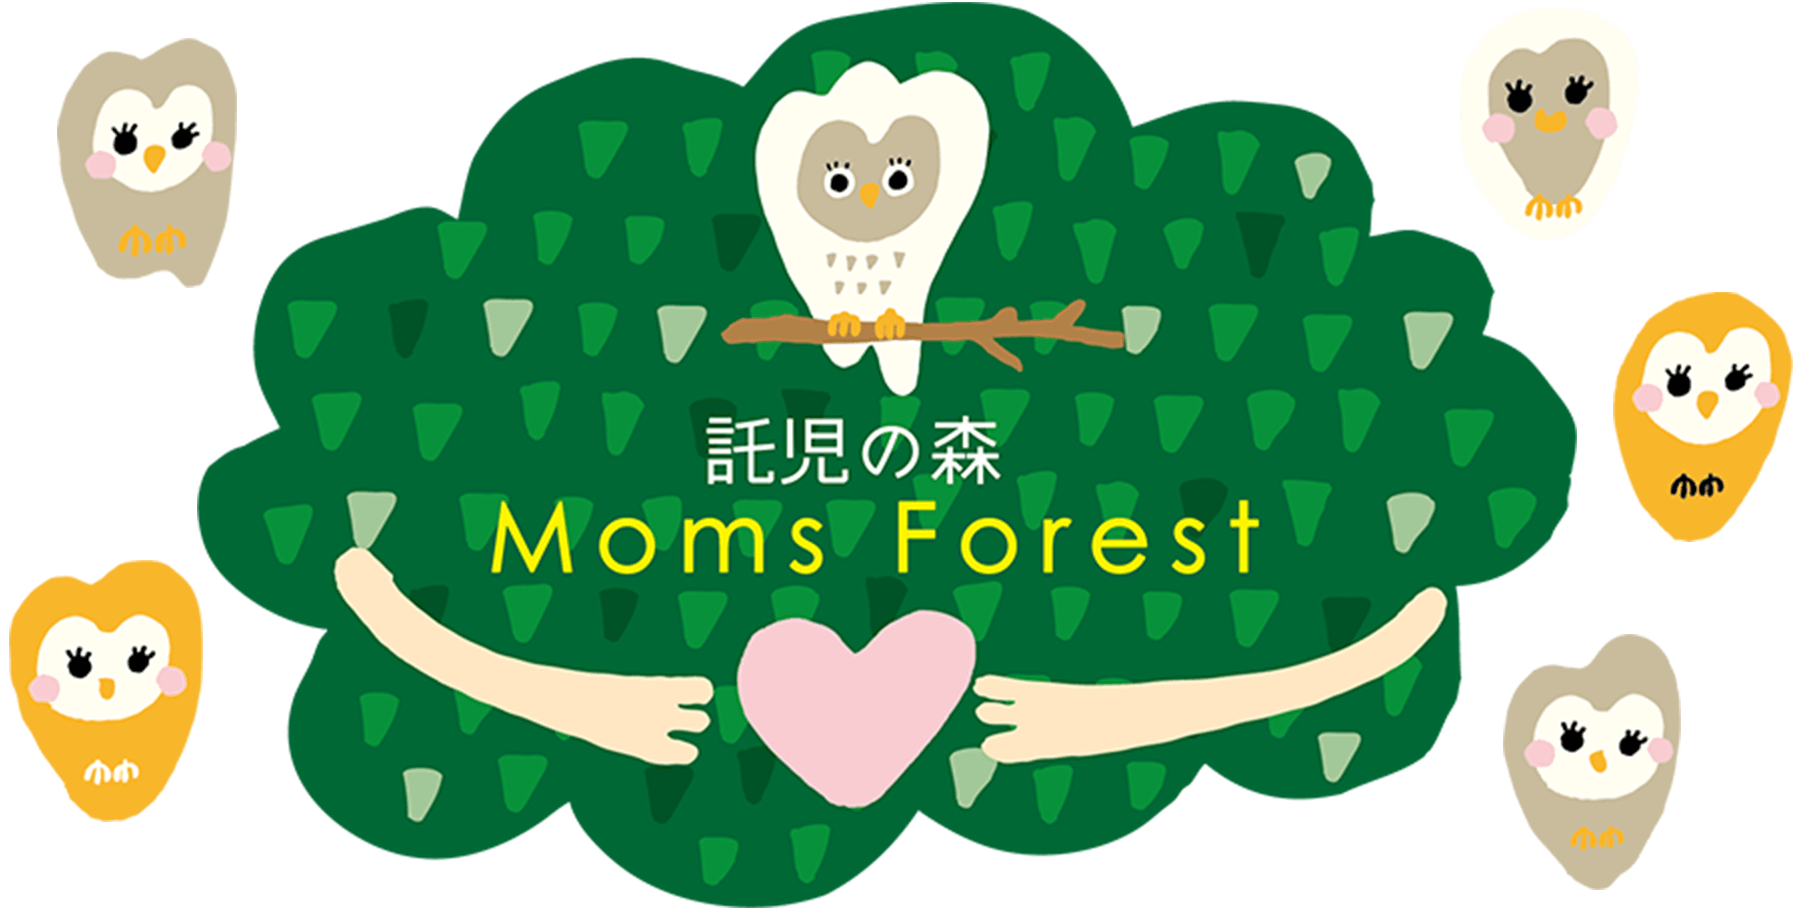 『母なる森』の モーリーマミー